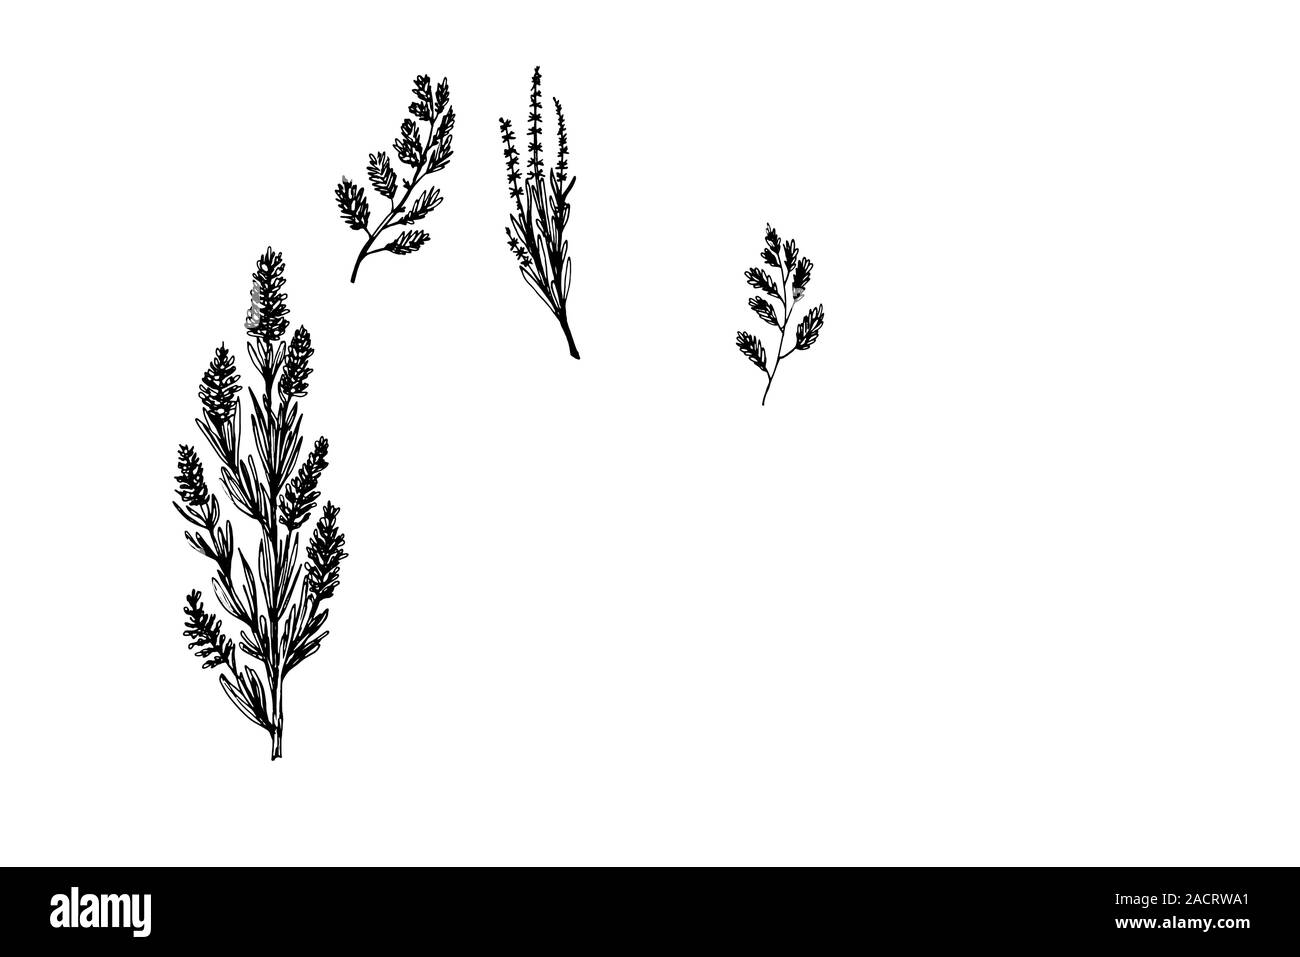 Hierbas silvestres y flores pintadas en estilo de grabado. Colección de gráficos dibujados a mano negra Ilustración del Vector